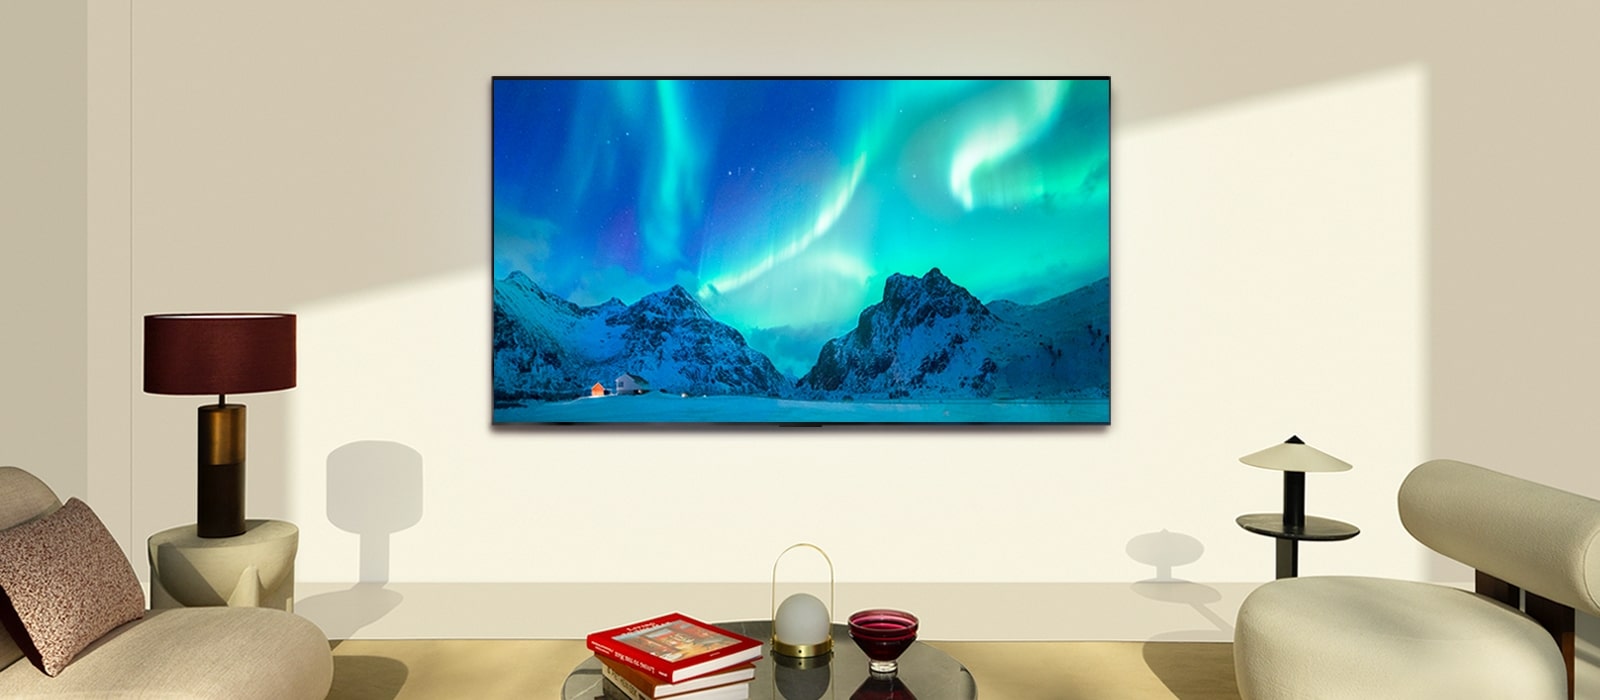 يظهر تلفزيون LG OLED TV في غرفة معيشة عصرية في وضح النهار. يتم عرض صورة الشفق القطبي على الشاشة بمستويات السطوع المثالية.